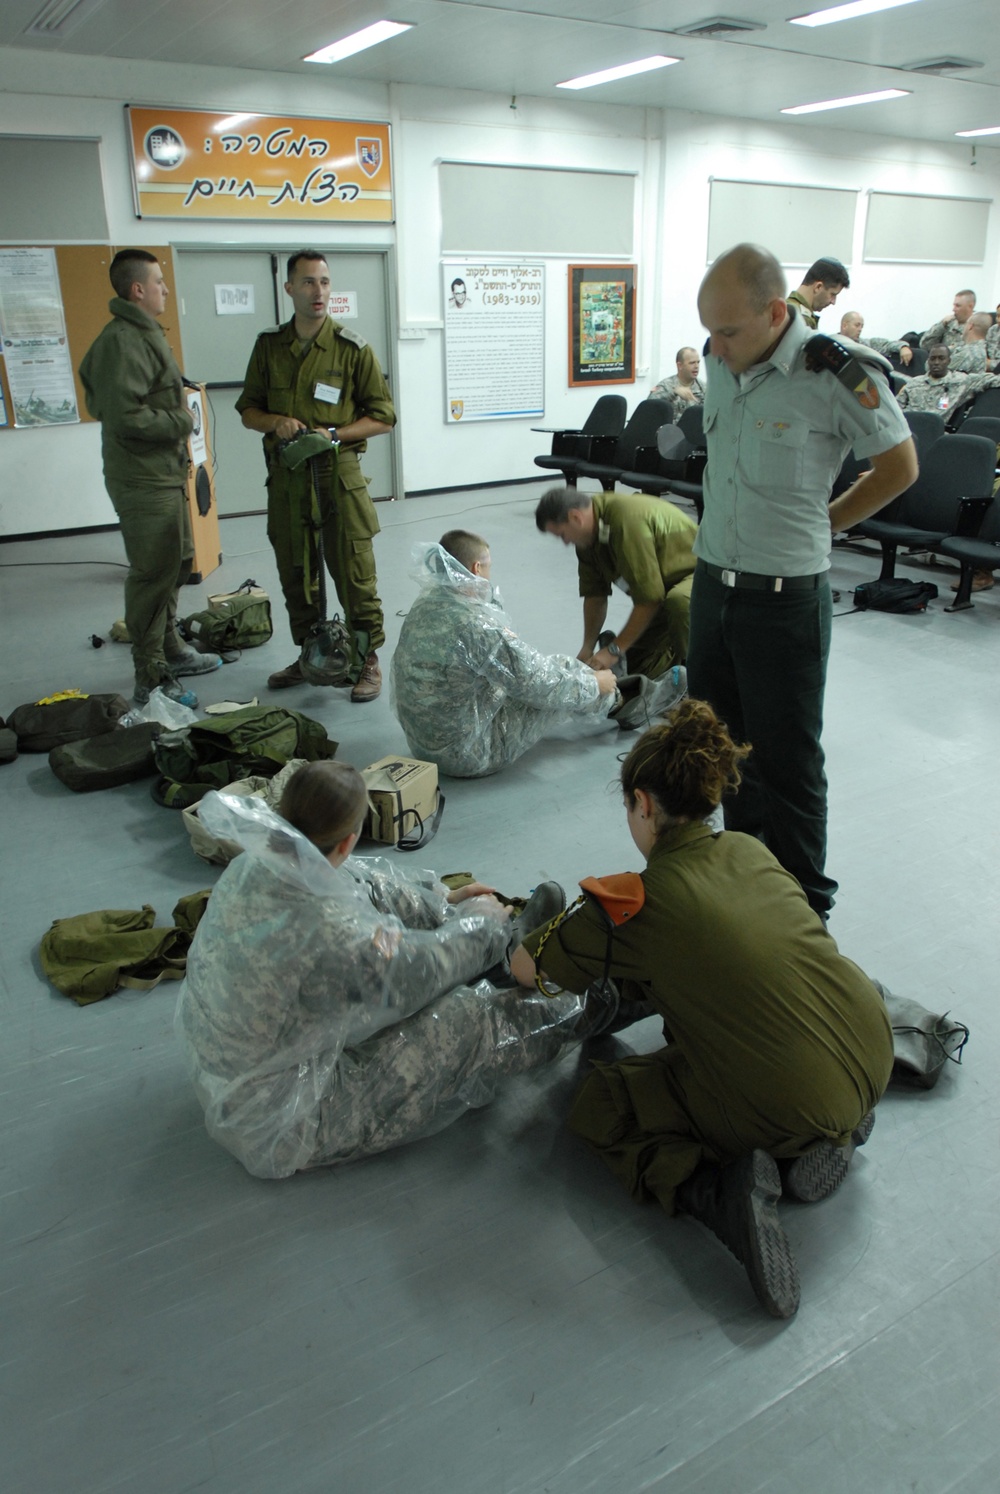 CERF troops train in Israel